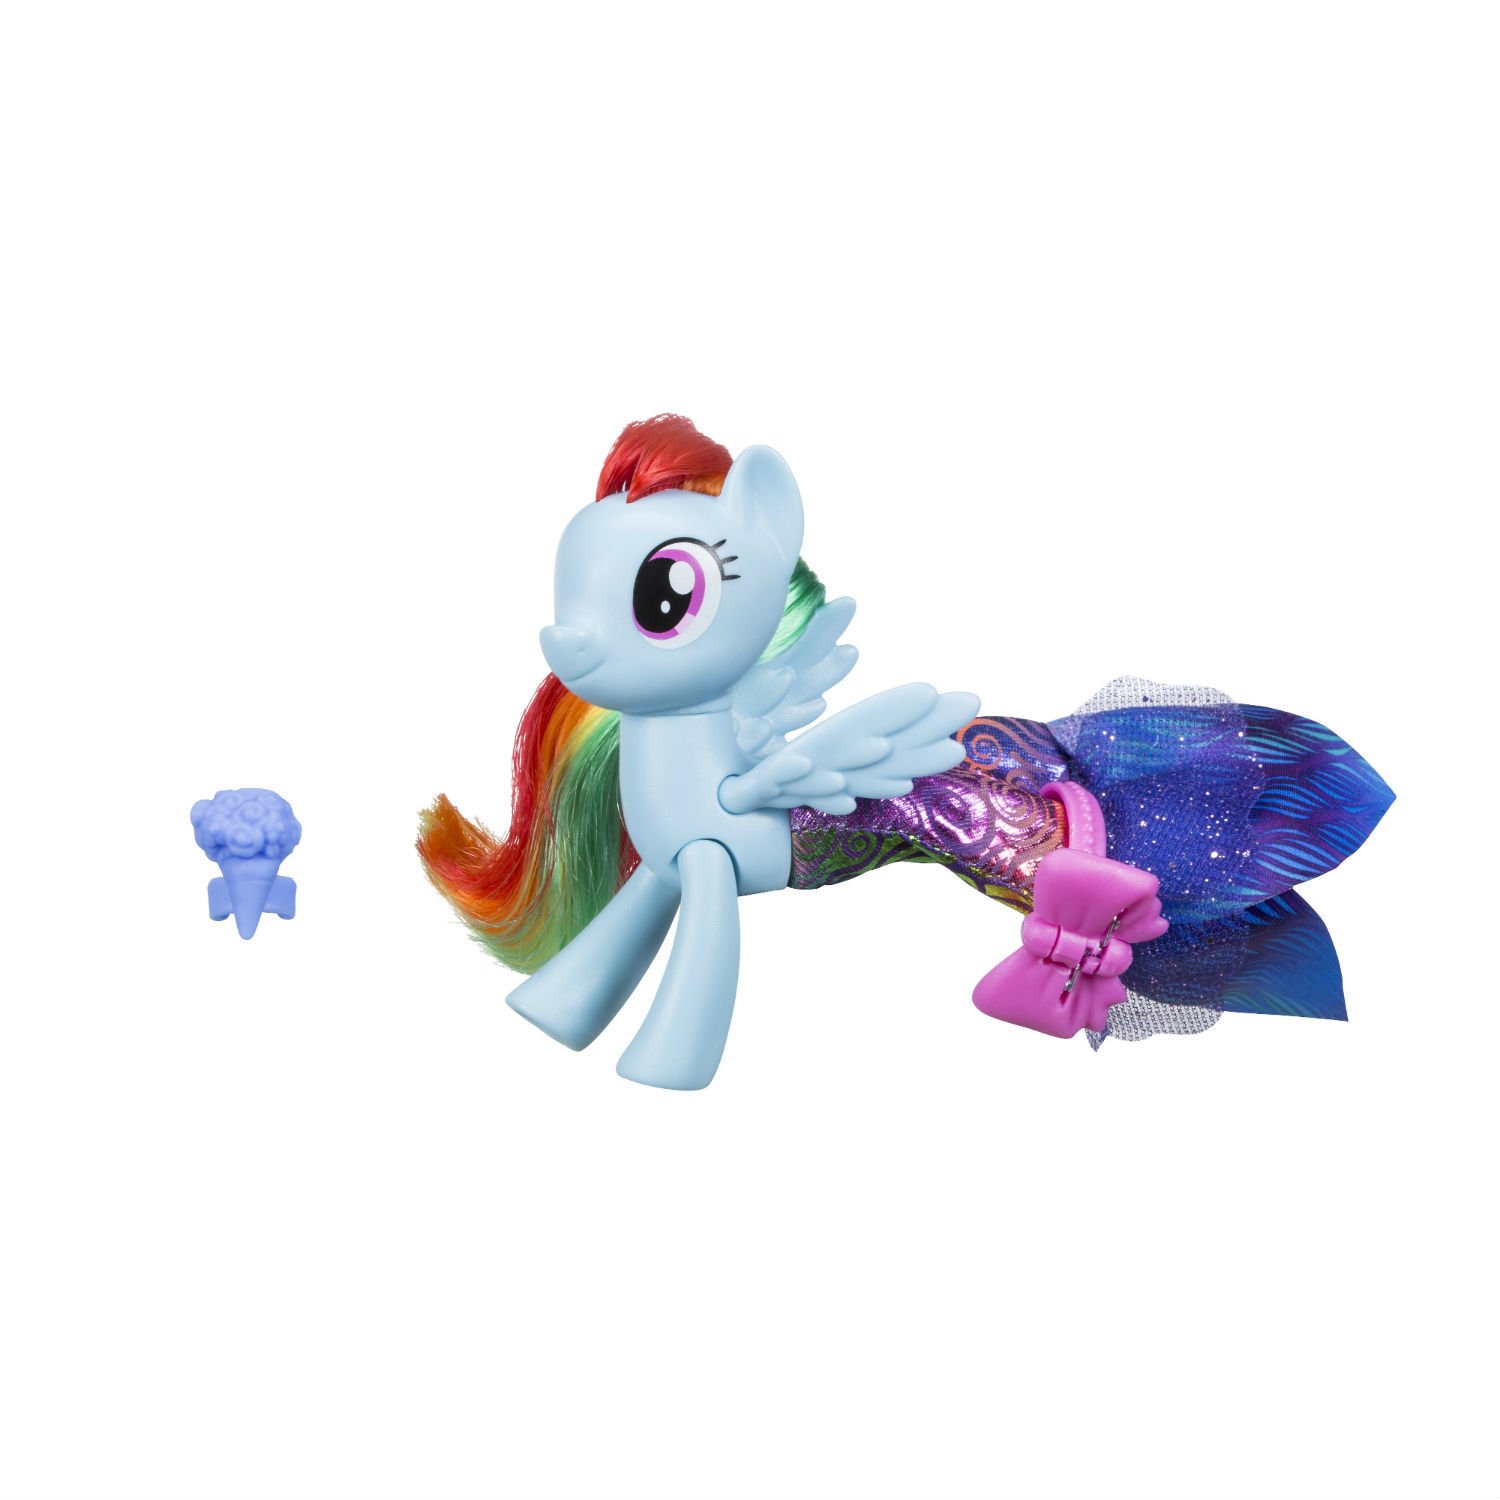 Фигурка Hasbro My Little Pony «Мерцание. Пони в волшебных платьях» C0681EU4 / Микс